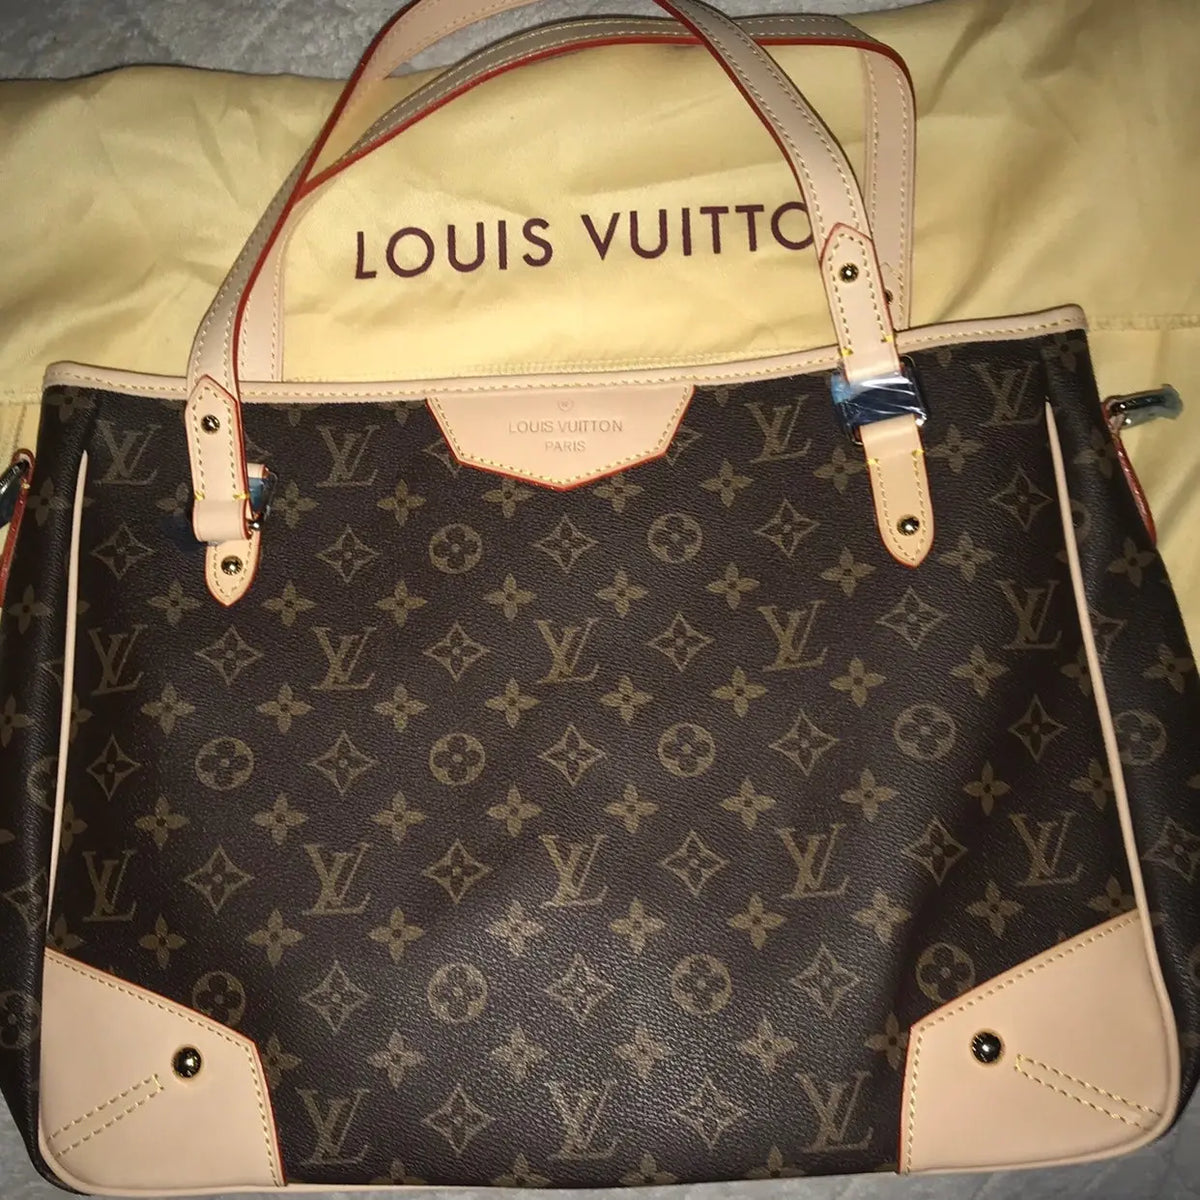 Louis Vuitton - Authenticated Croisé Utility Handbag - Cotton Beige for Women, Never Worn